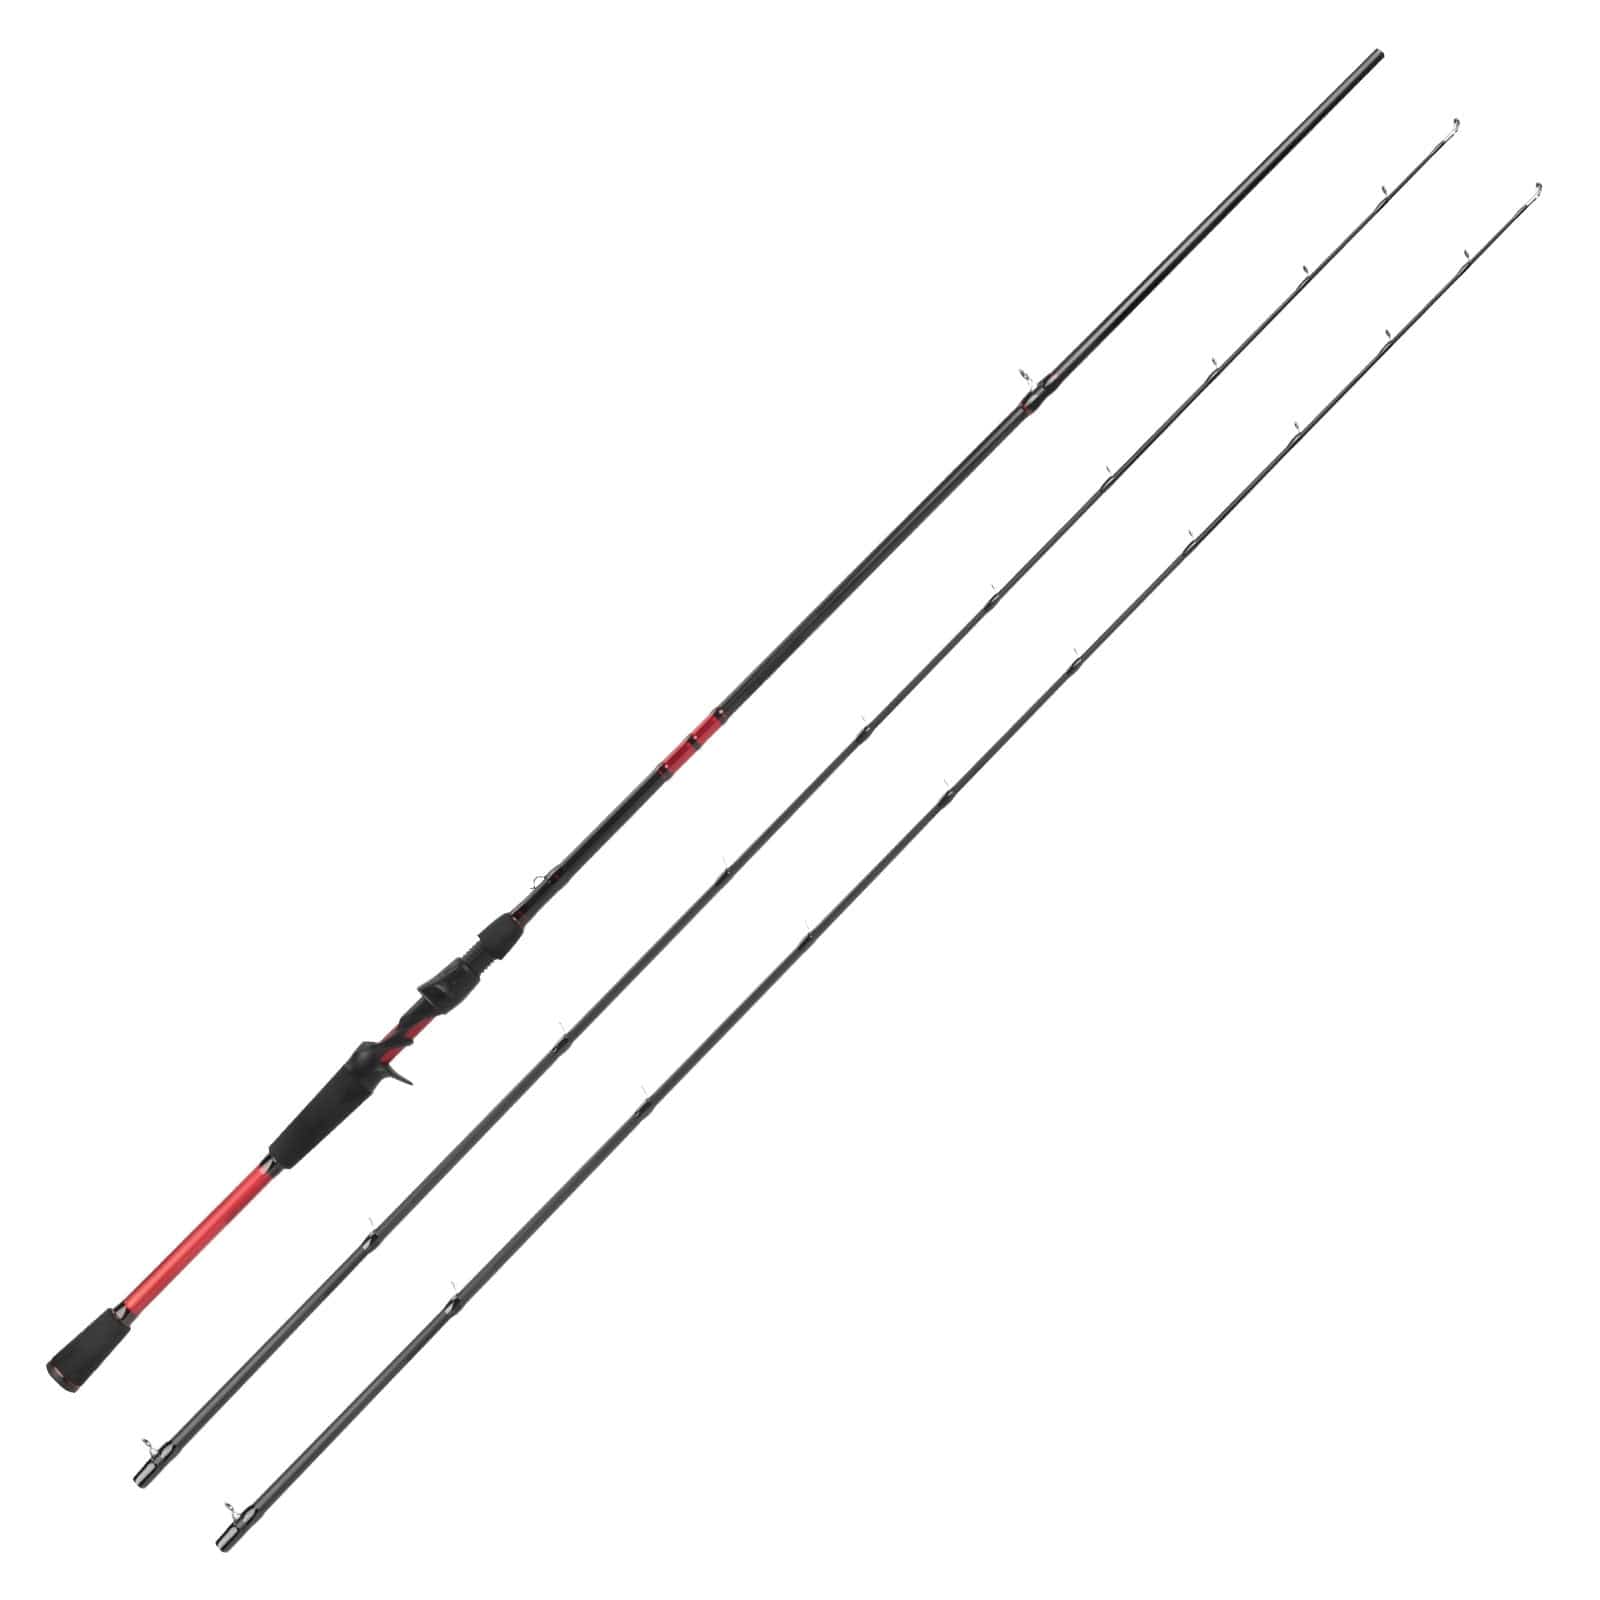 KastKing Royale Advantage Fishing Rods